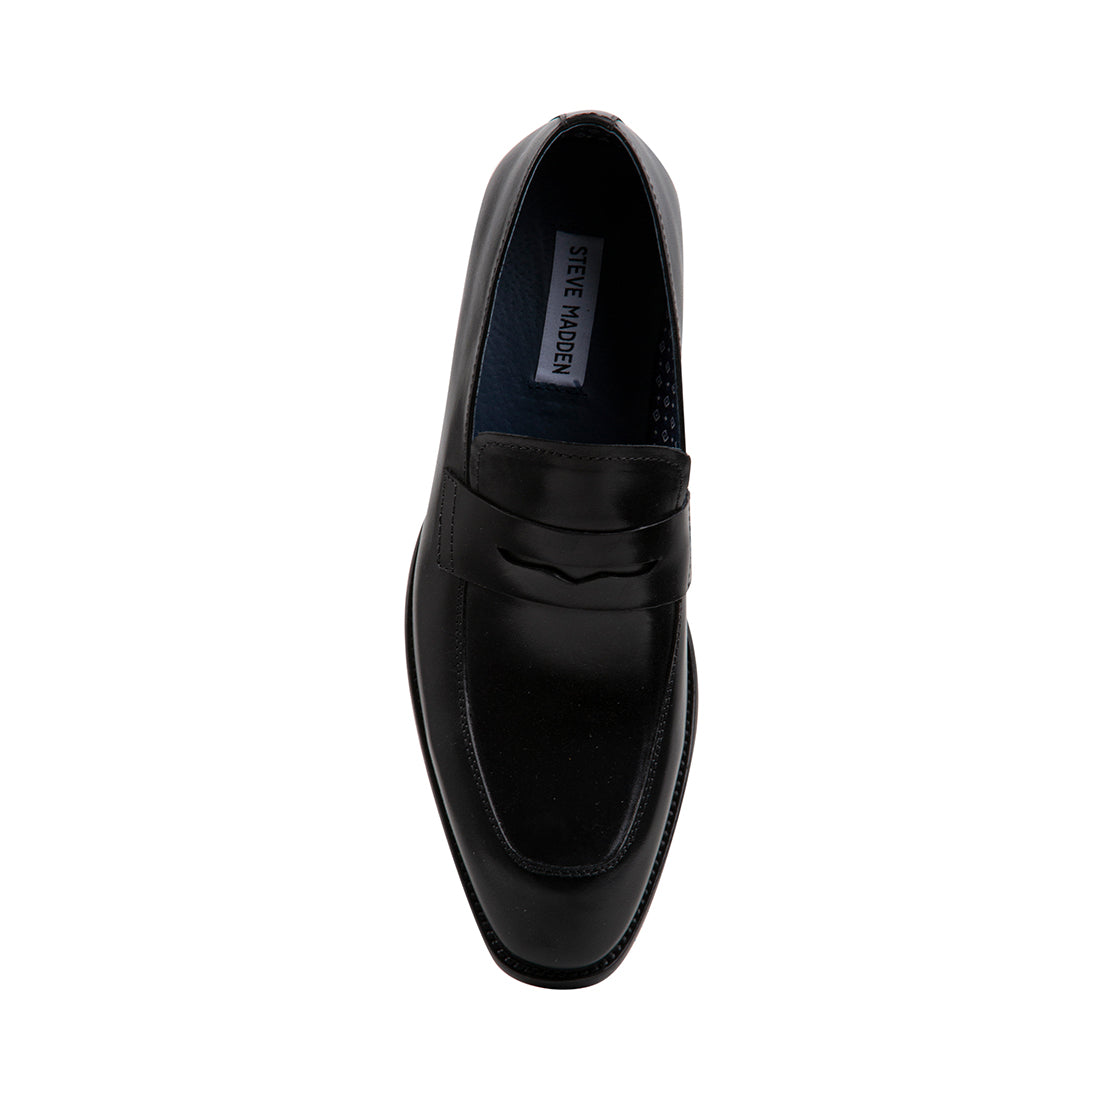 JARRING Black Leather Men's Dress Shoes | Men's Designer Dress Shoes ...